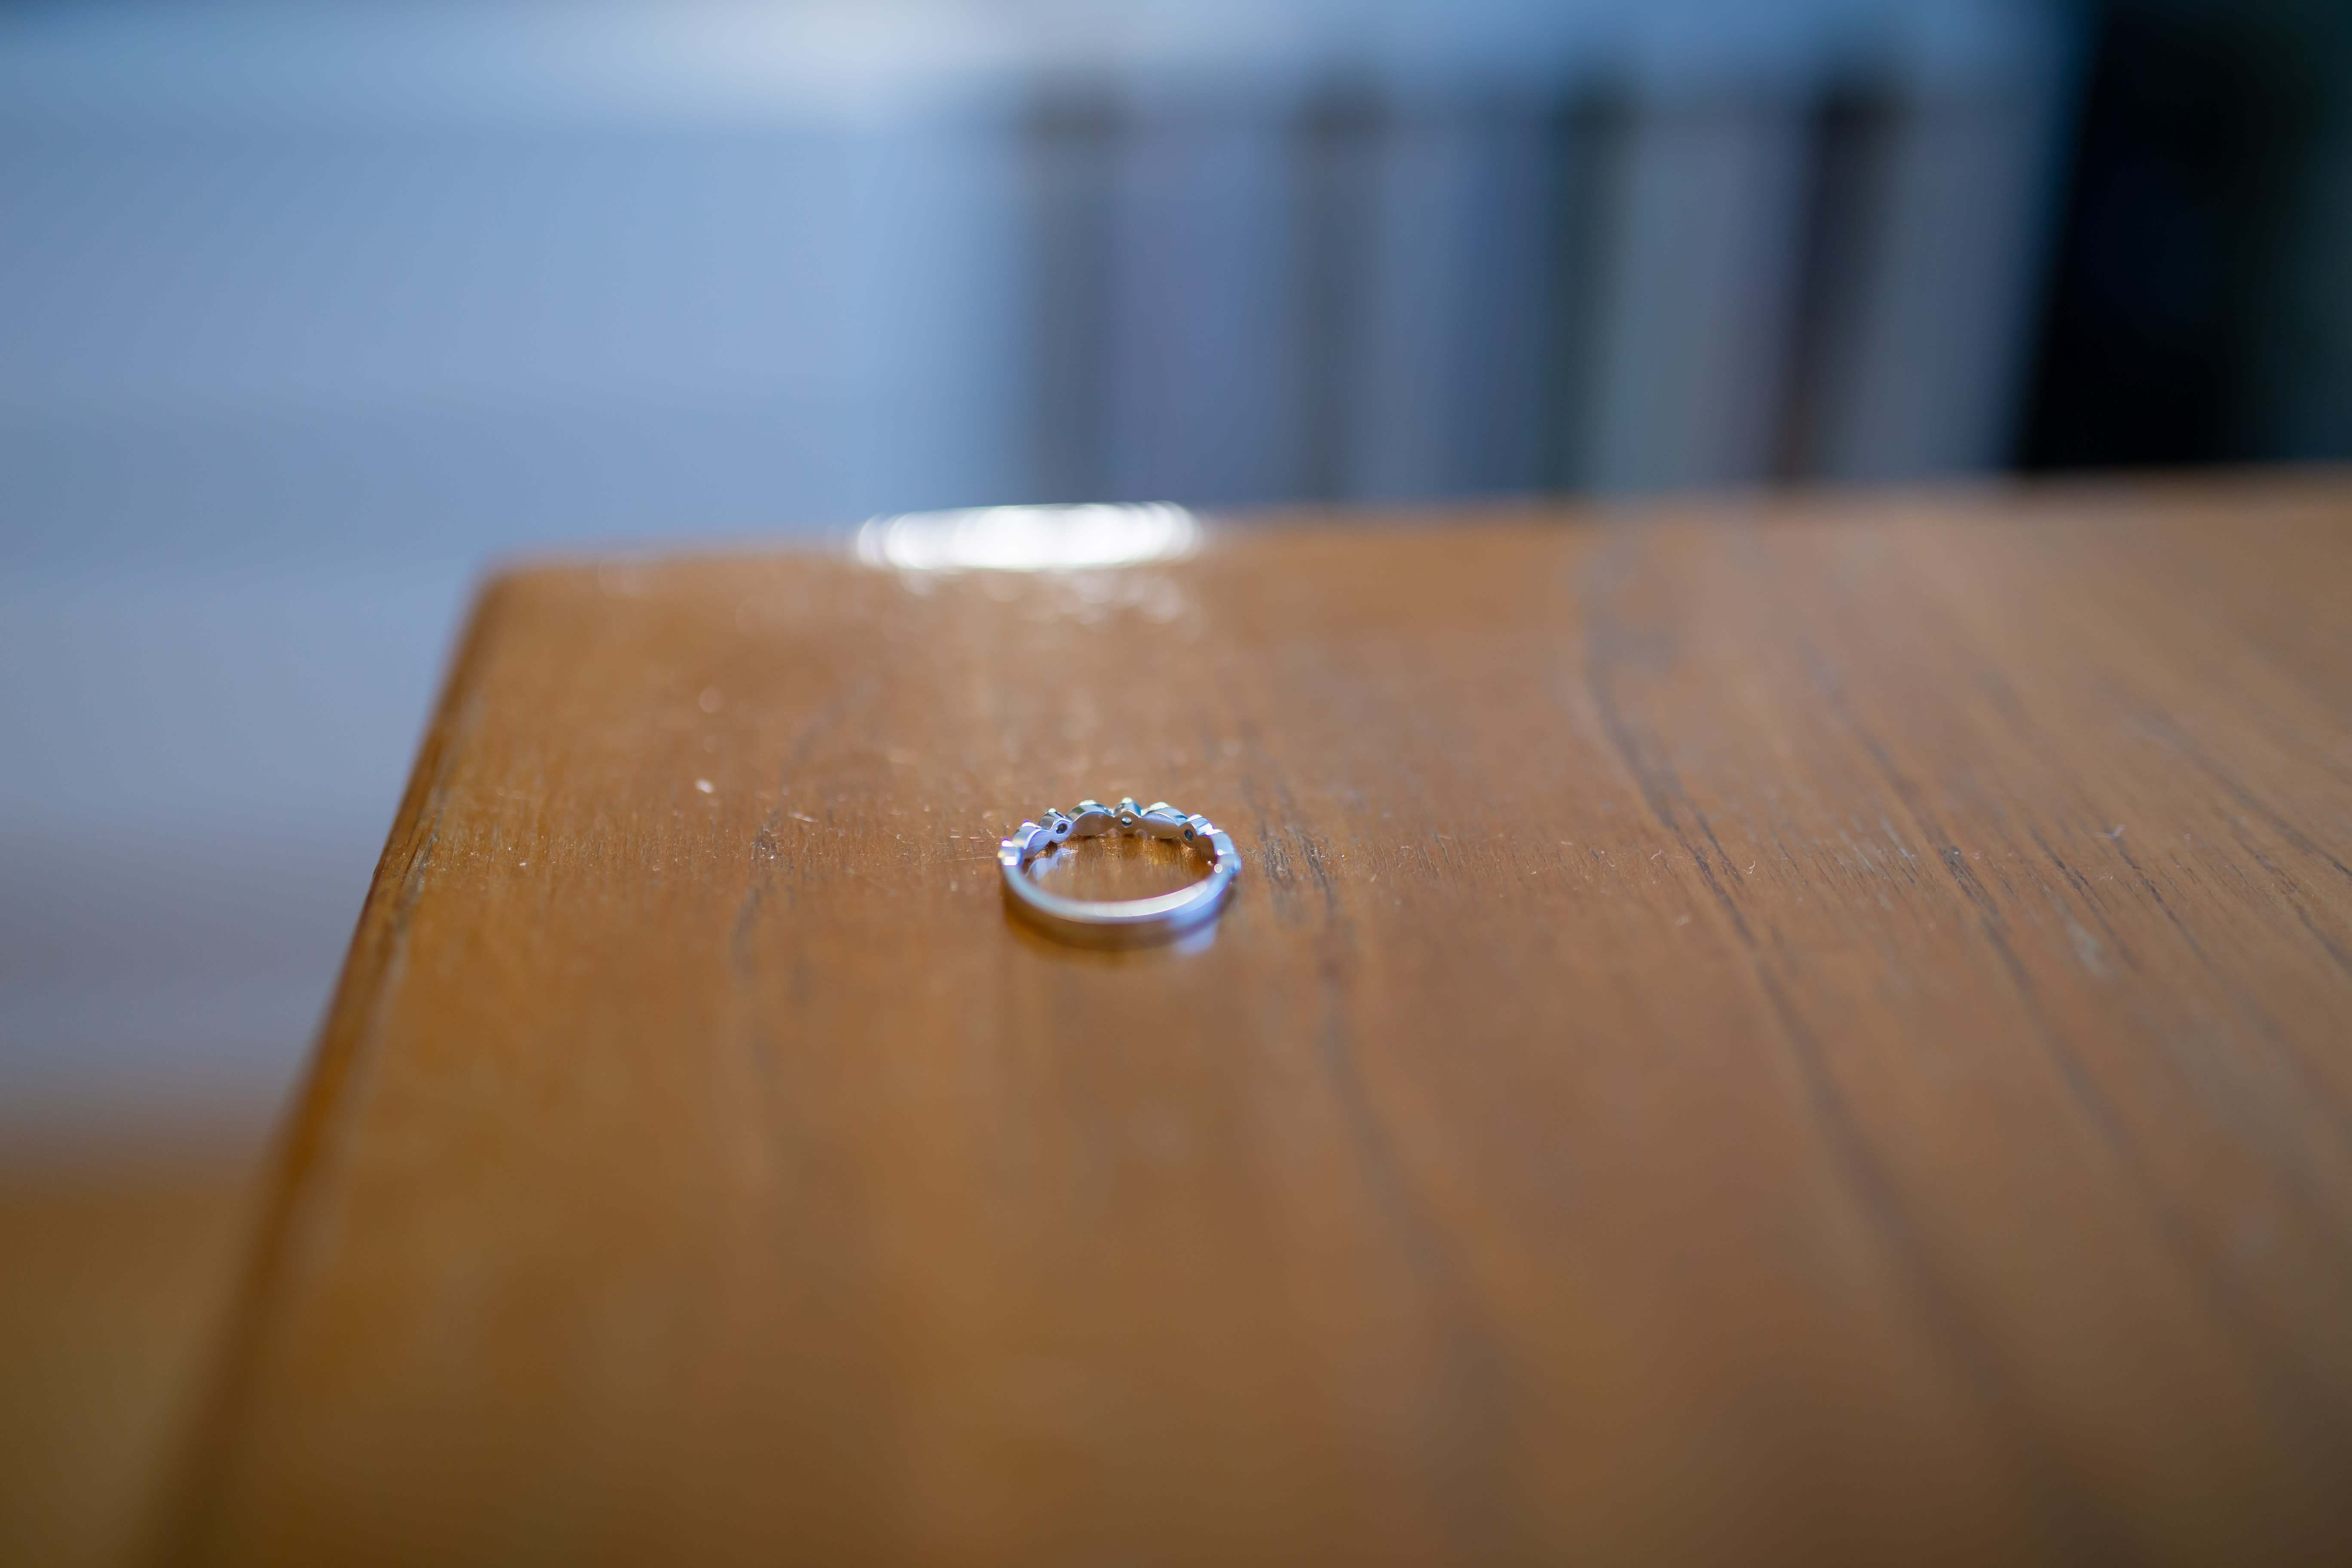 Finnland führt ein Gesetz ein, das die Auflösung von Zwangsverheiratungen ermöglicht